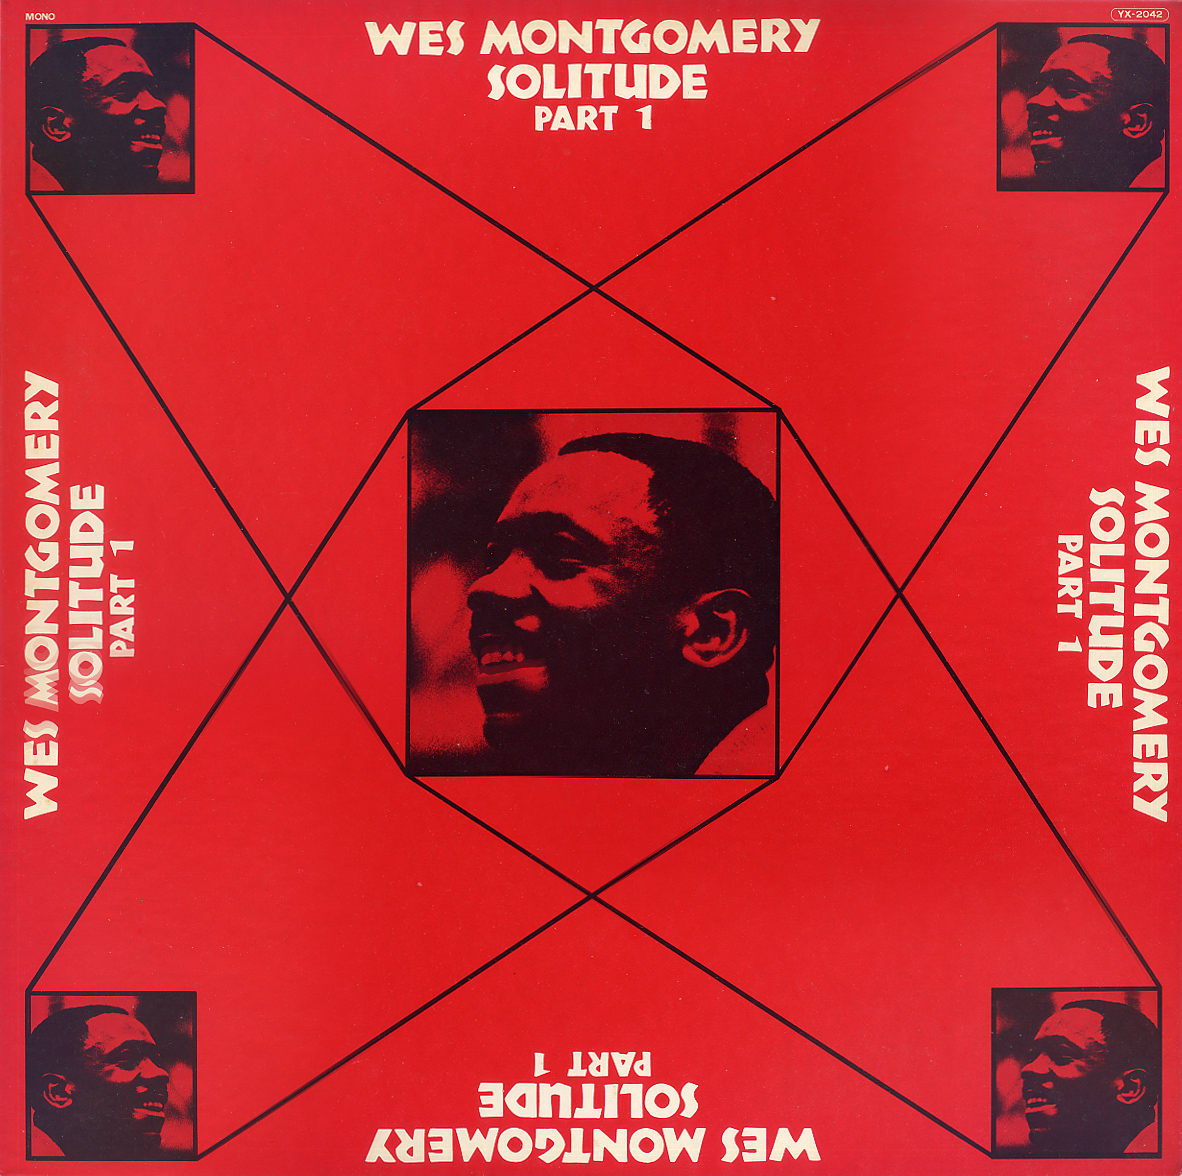 爆買い送料無料 SOLITUDE WES MONTGOMERY ウェス モンゴメリー CD